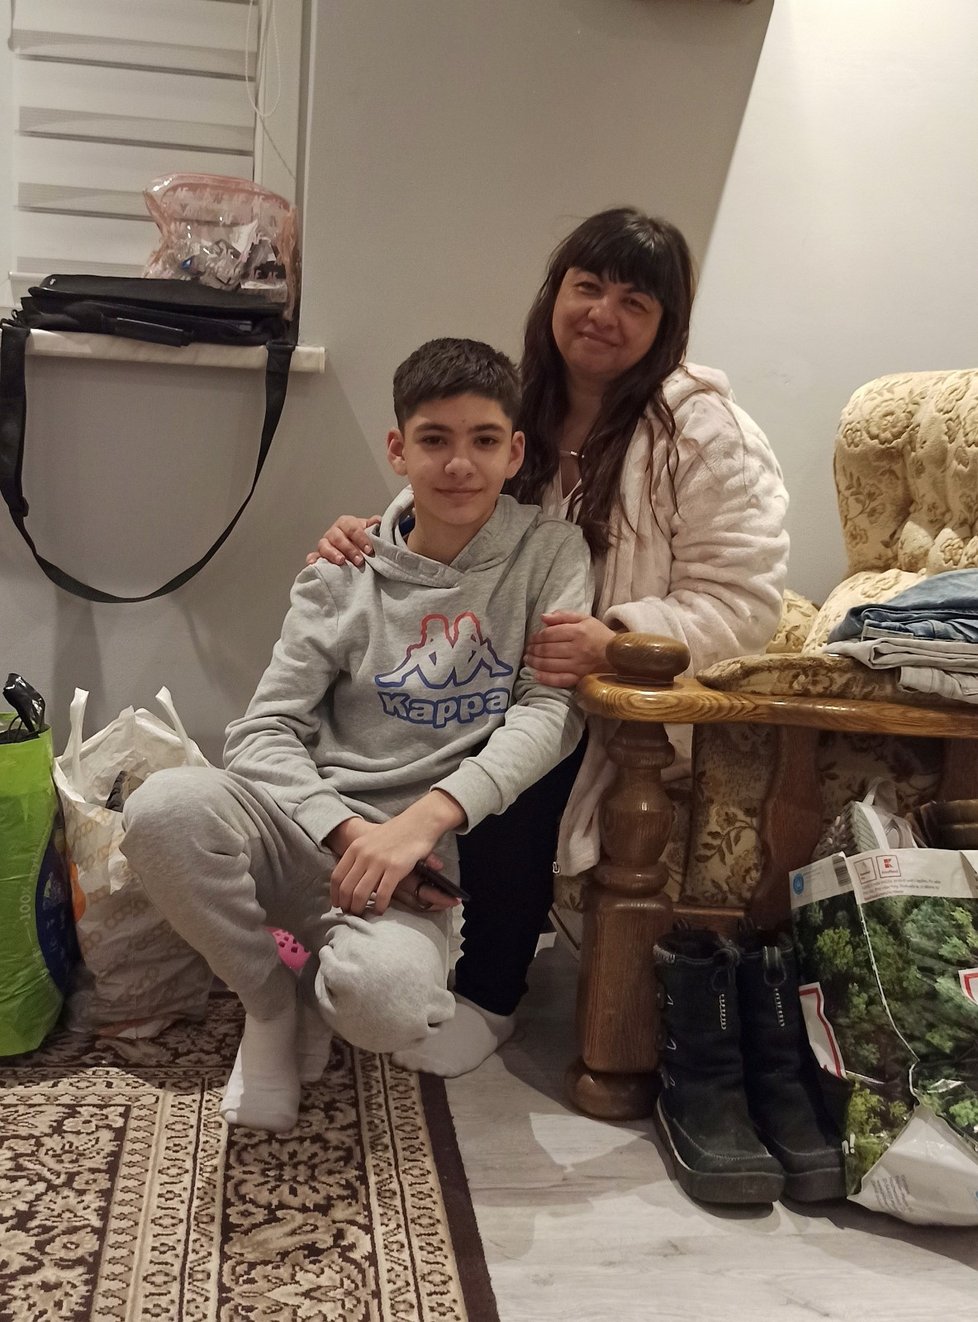 Ukrajinka Lydia Zacharová (44) se synem Jurijem (13) našli azyl u rodiny Milanové v Písku na Frýdecko-Místecku.